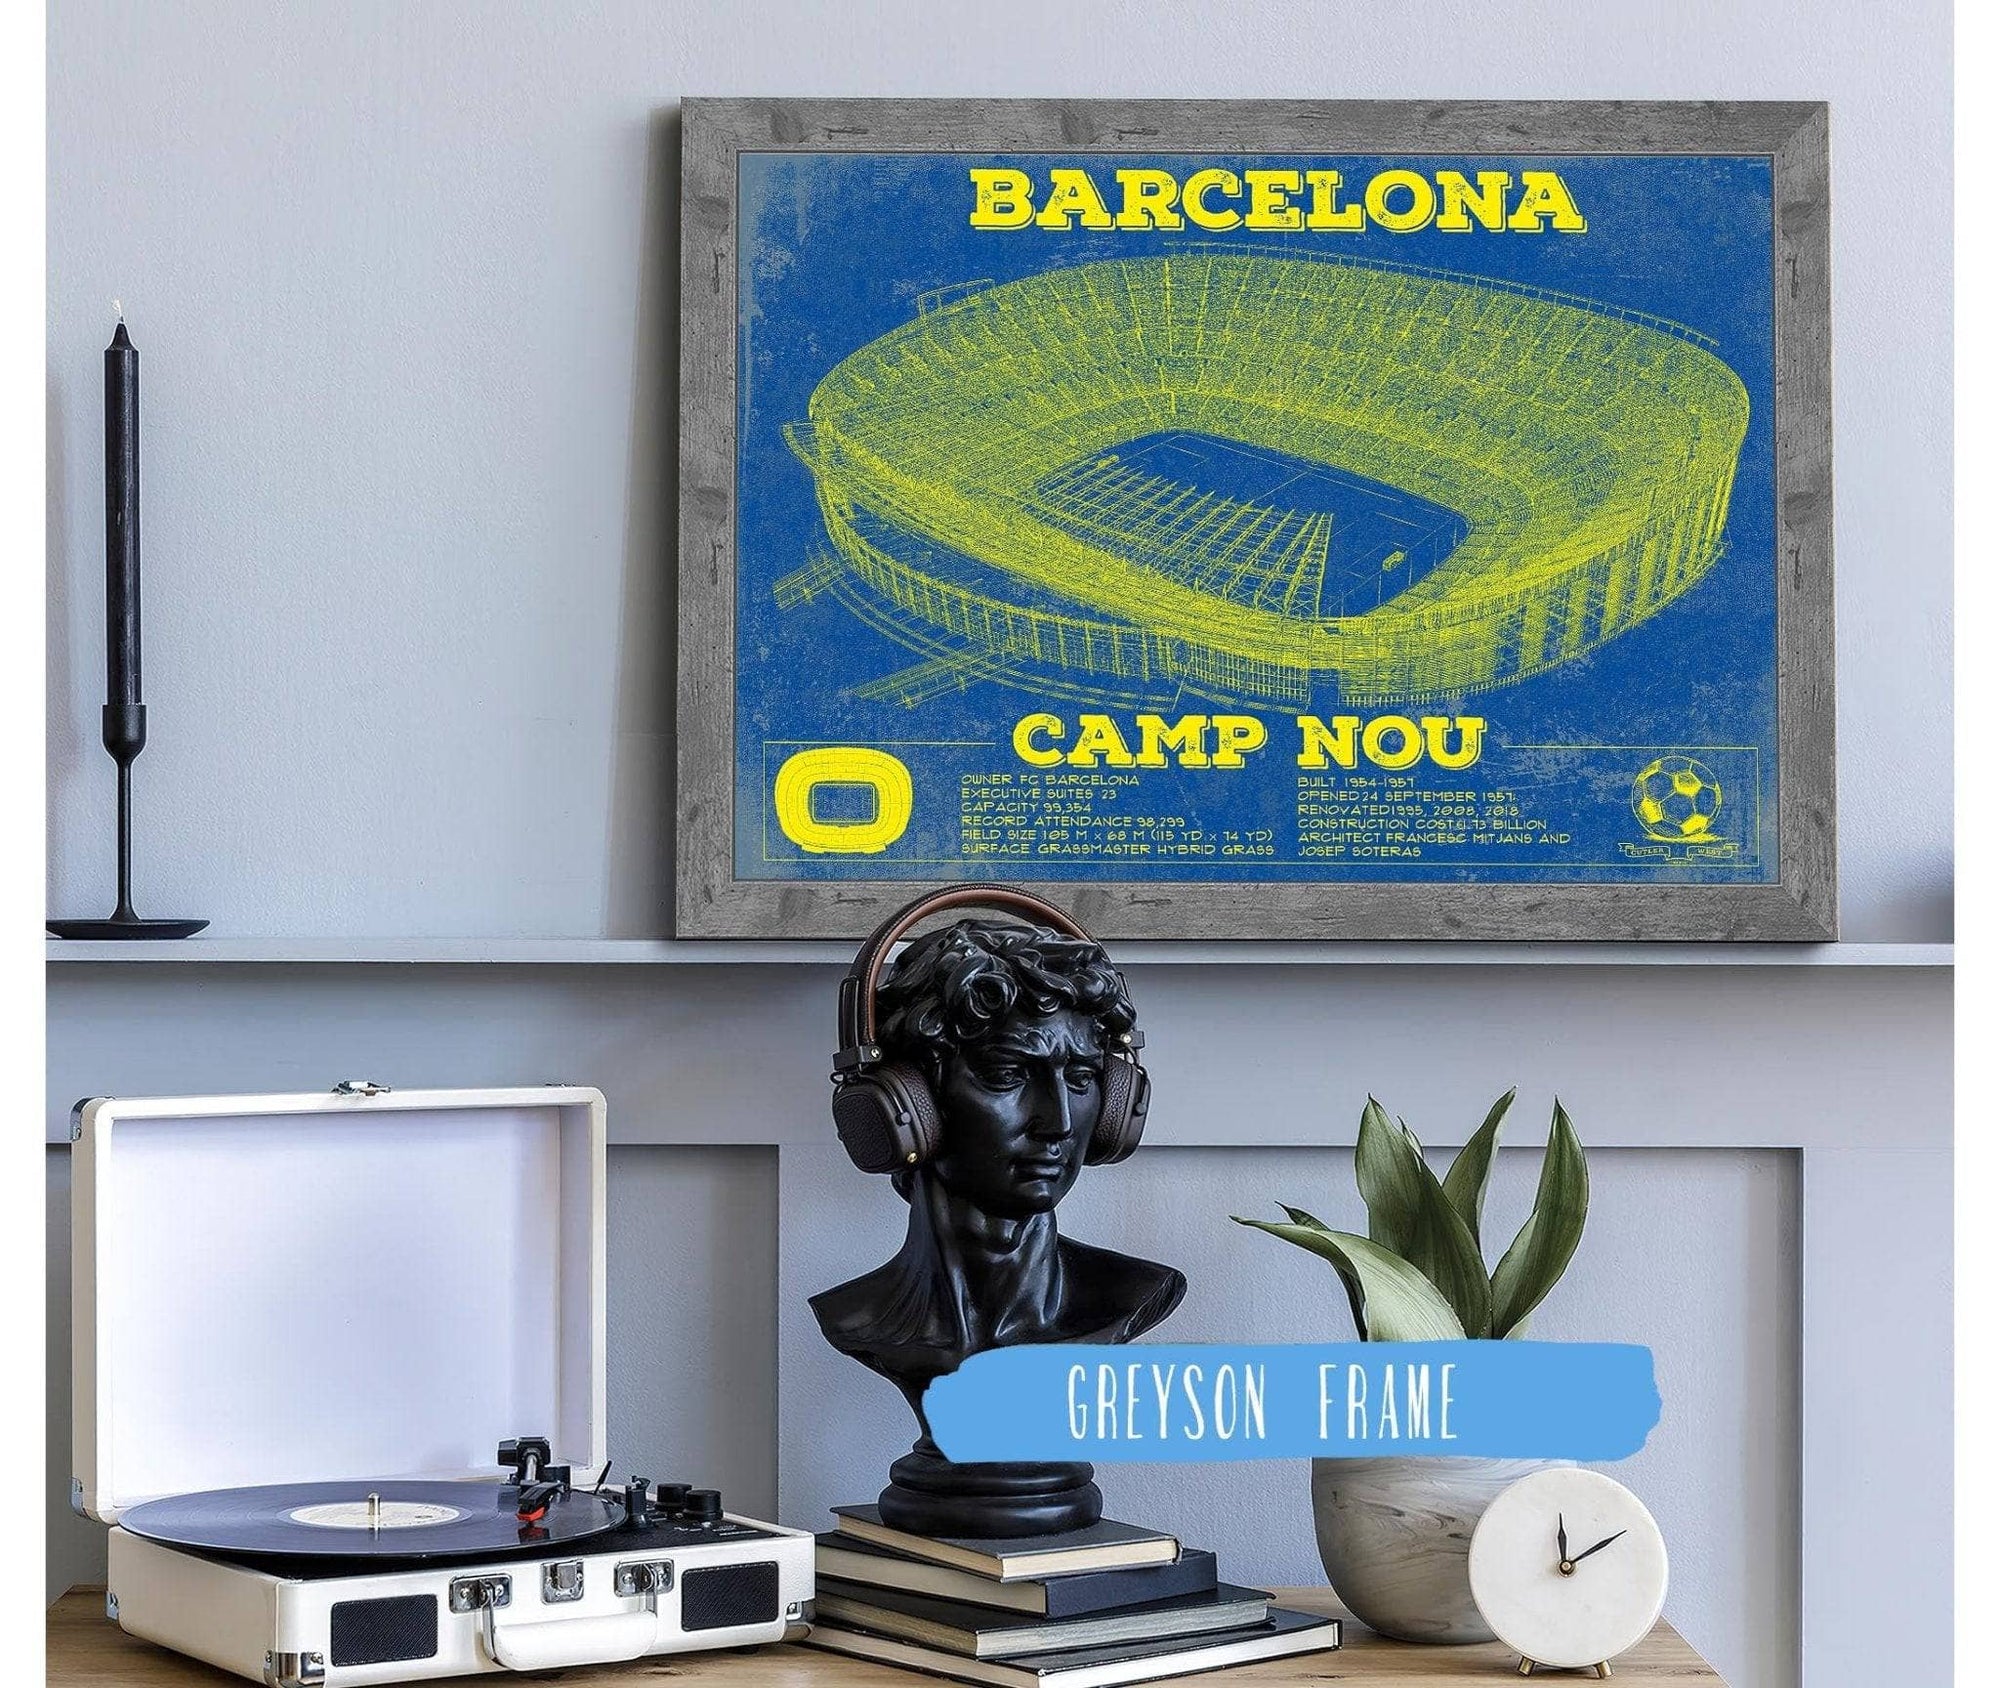 Cutler West Soccer Collection Vintage FC Barcelona Camp Nou Team Color Stadium Soccer Print